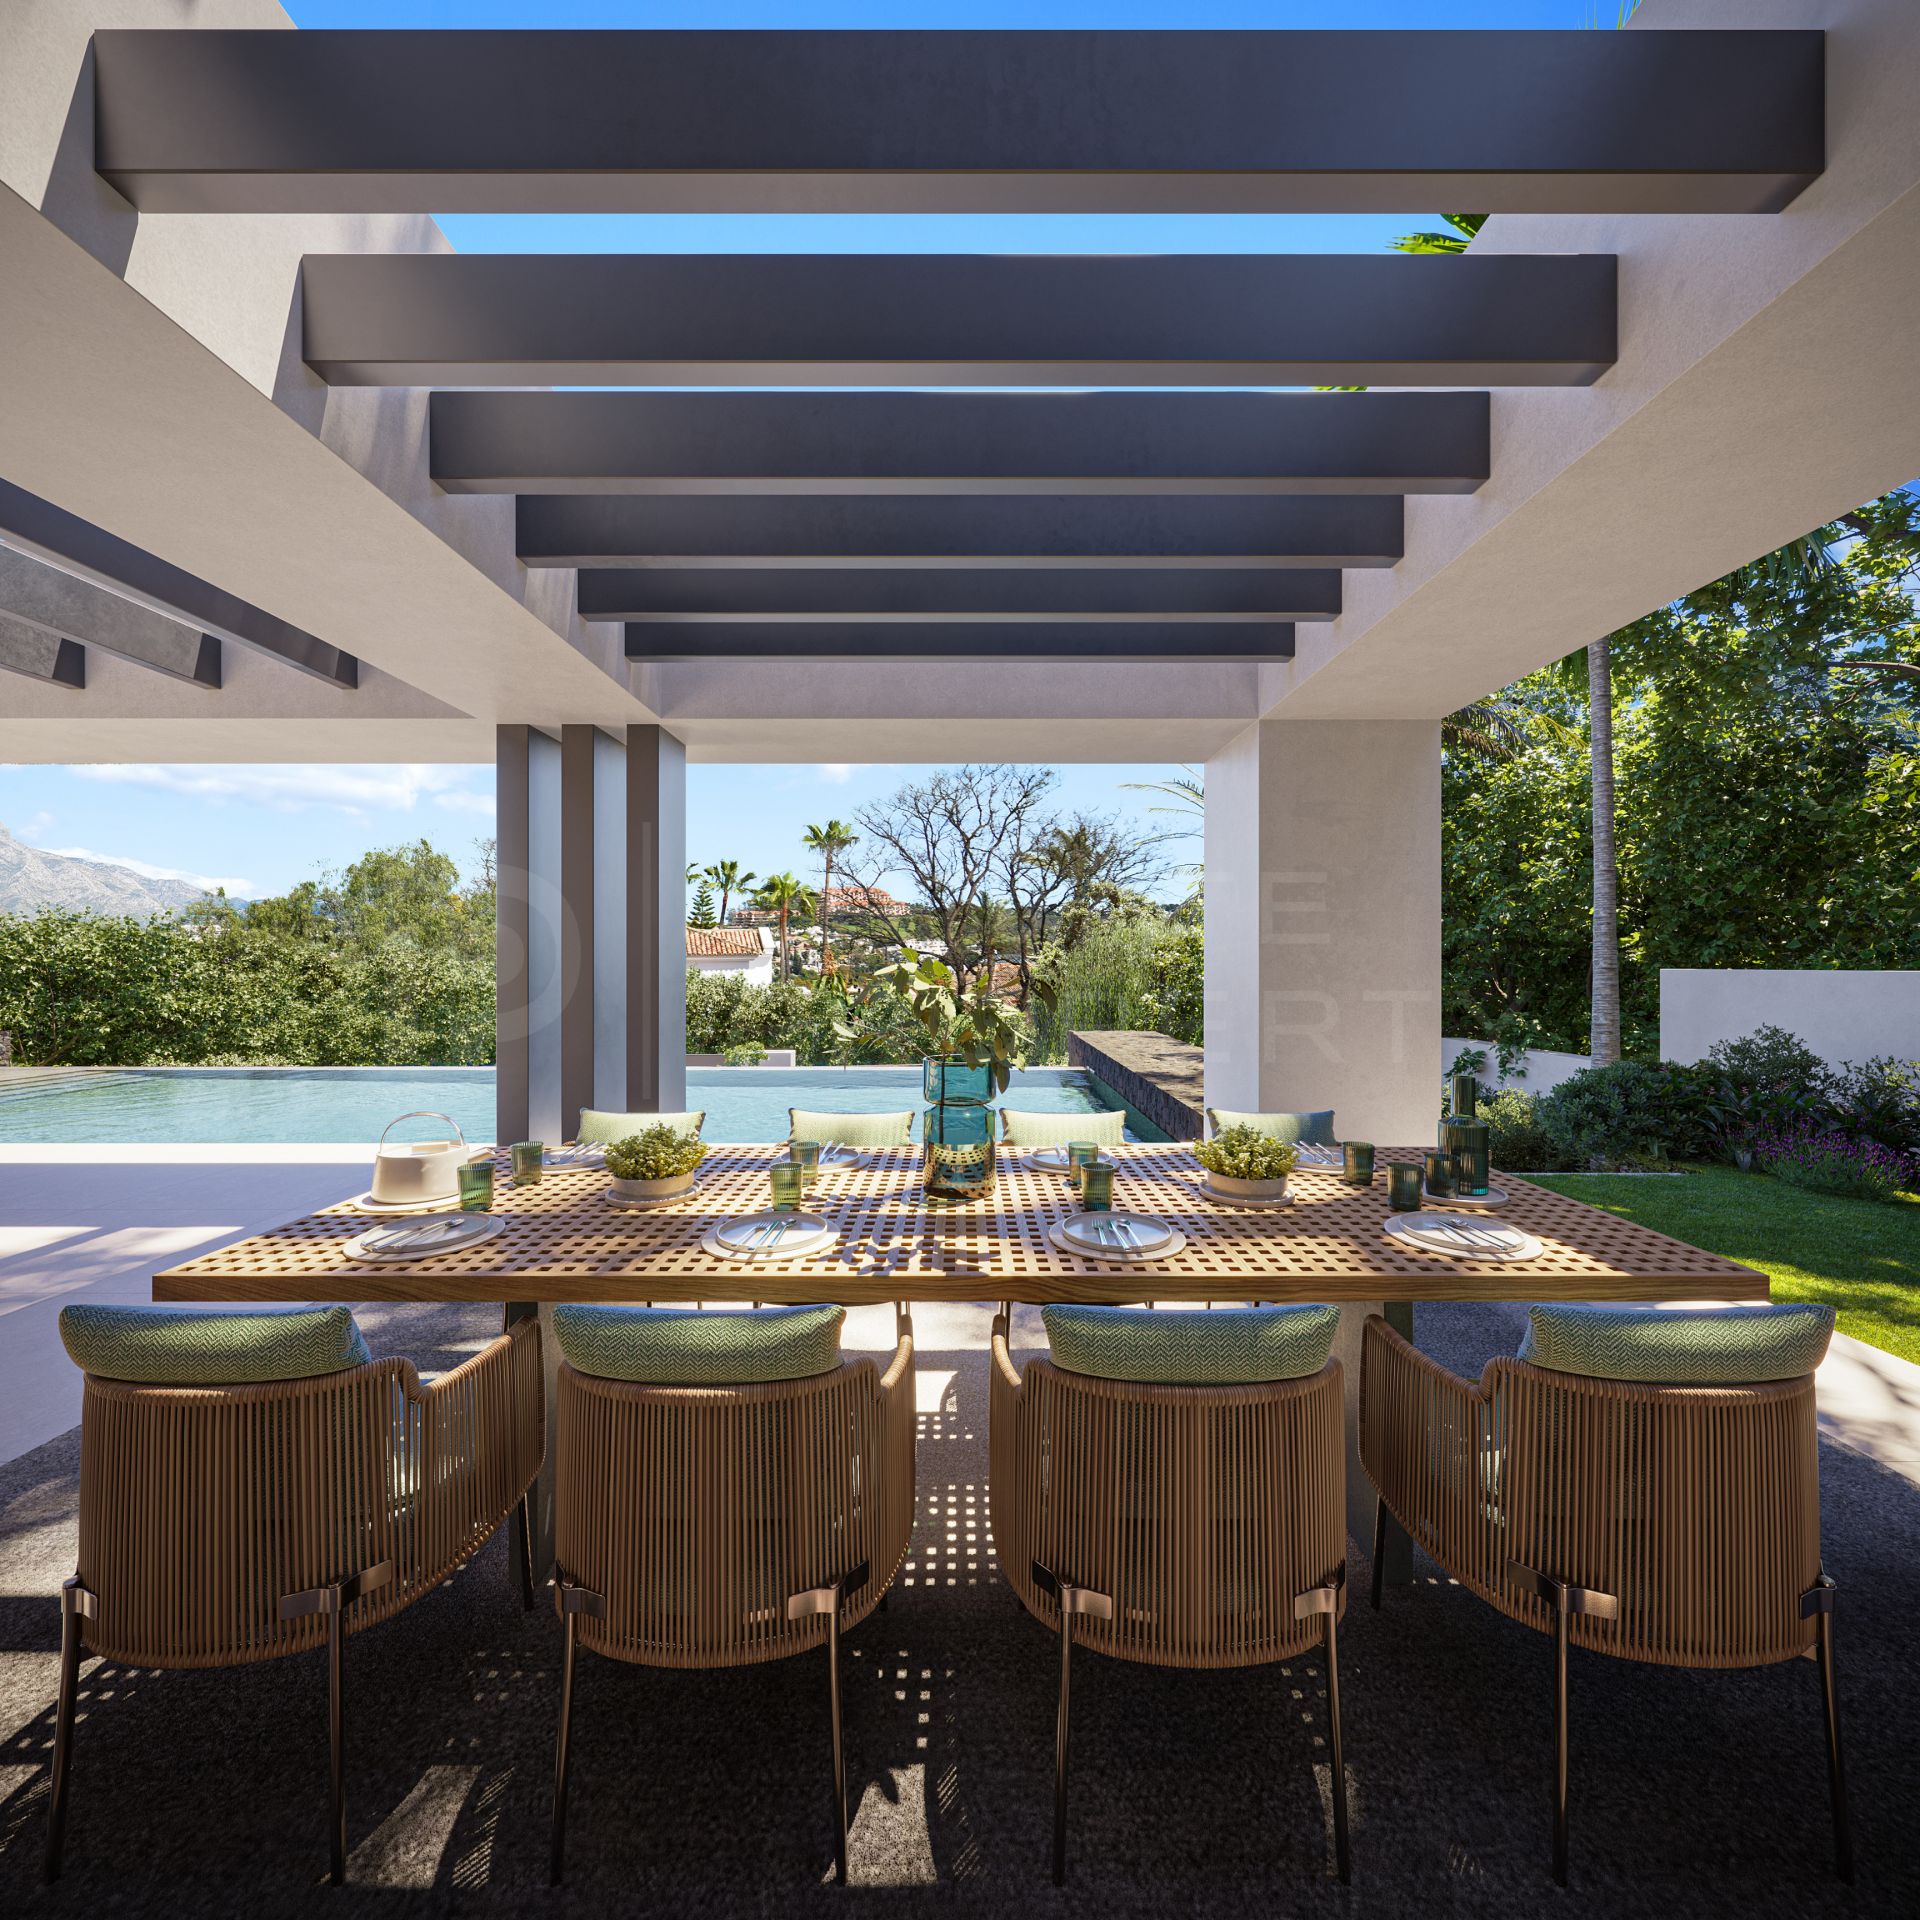 Striking contemporary villa in La Quinta